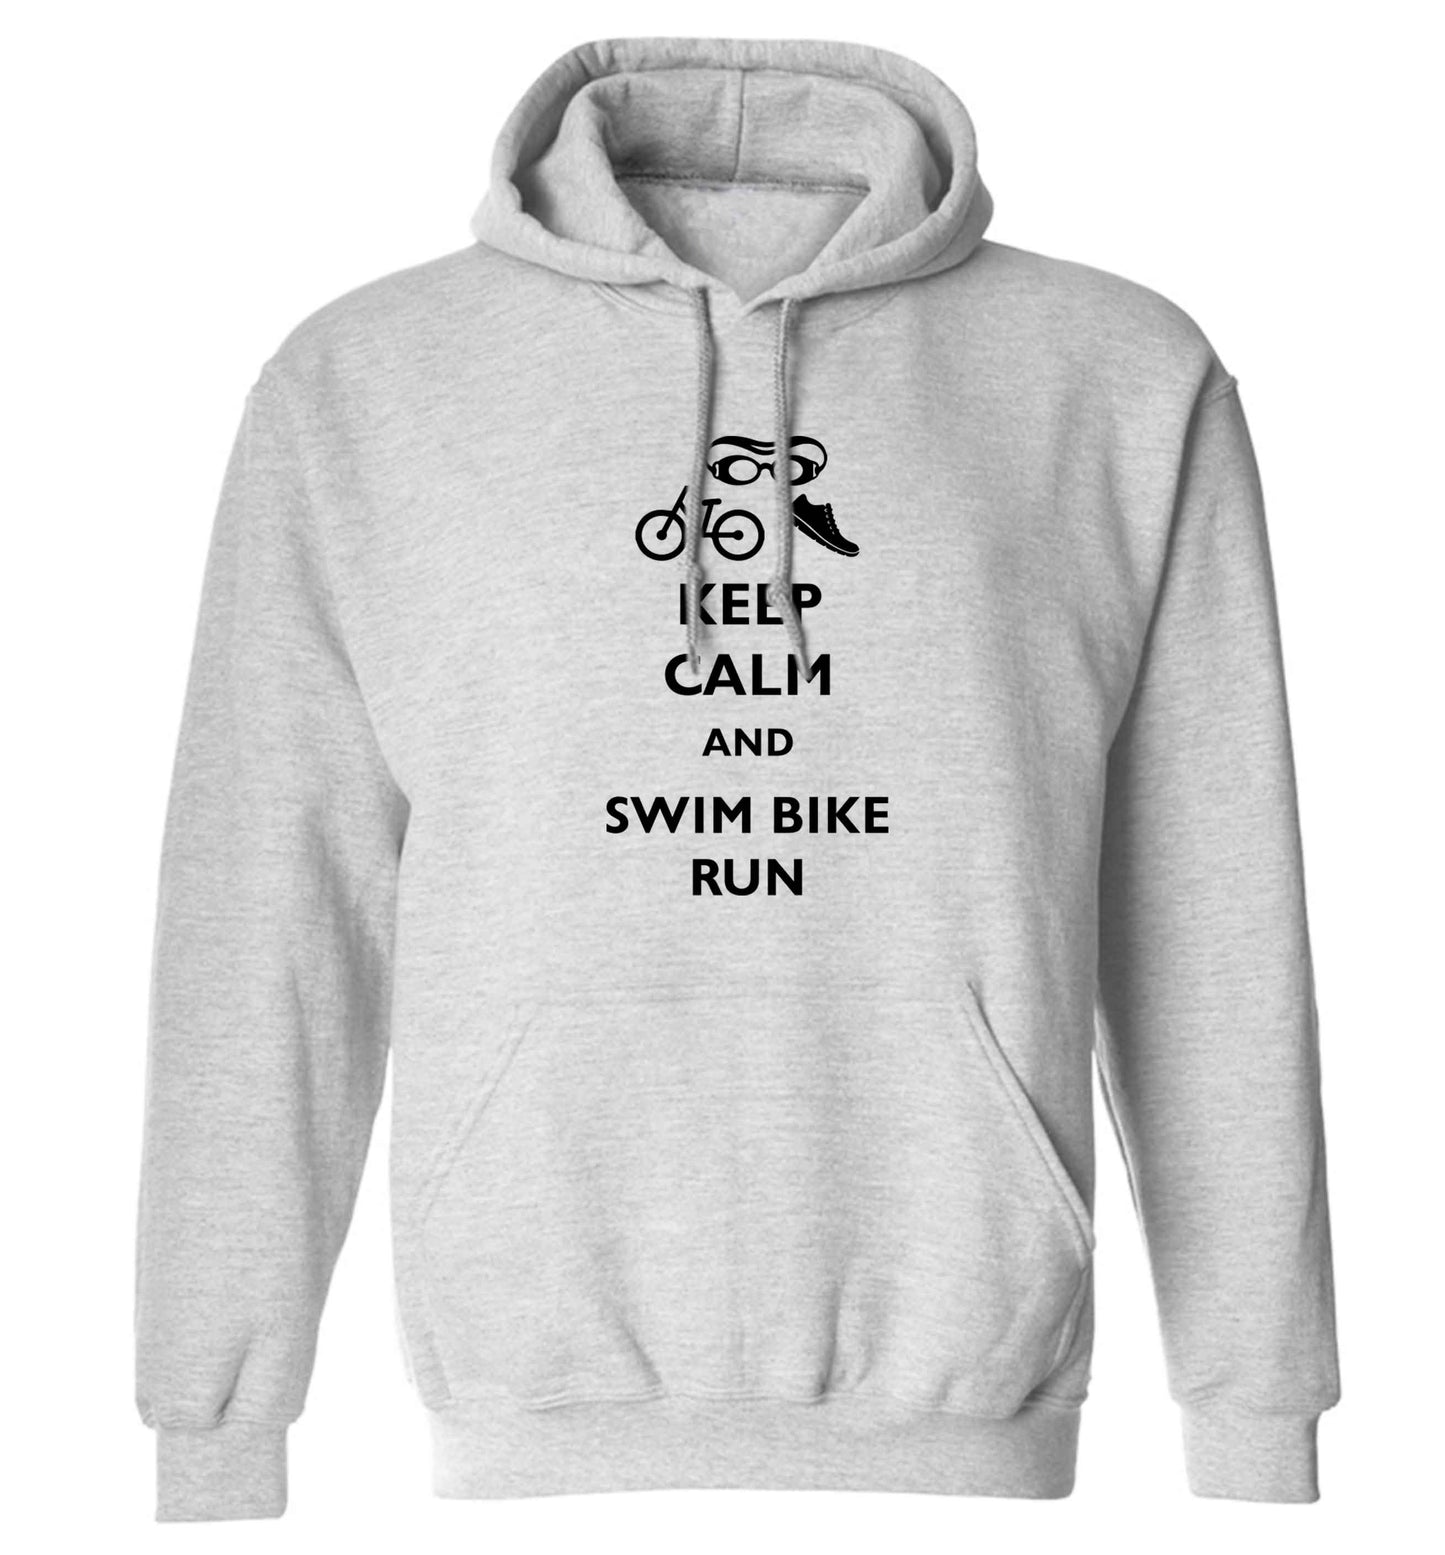 Keep calm and swim bike run adults unisex grey hoodie 2XL